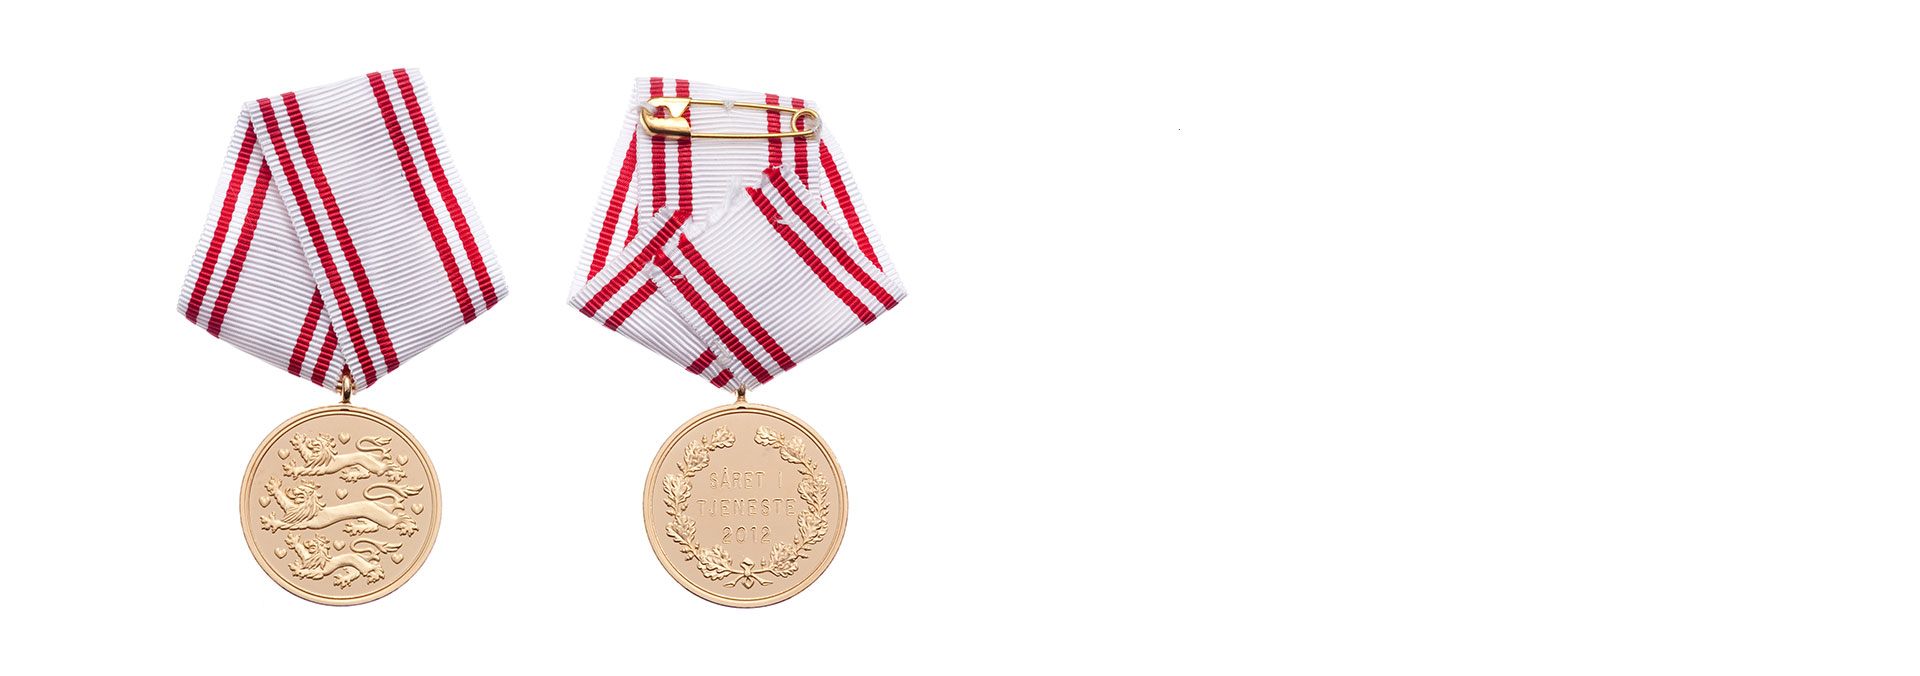 Forside og bagsiden af medaljen Forsvarets Medalje for Sårede i Tjeneste"